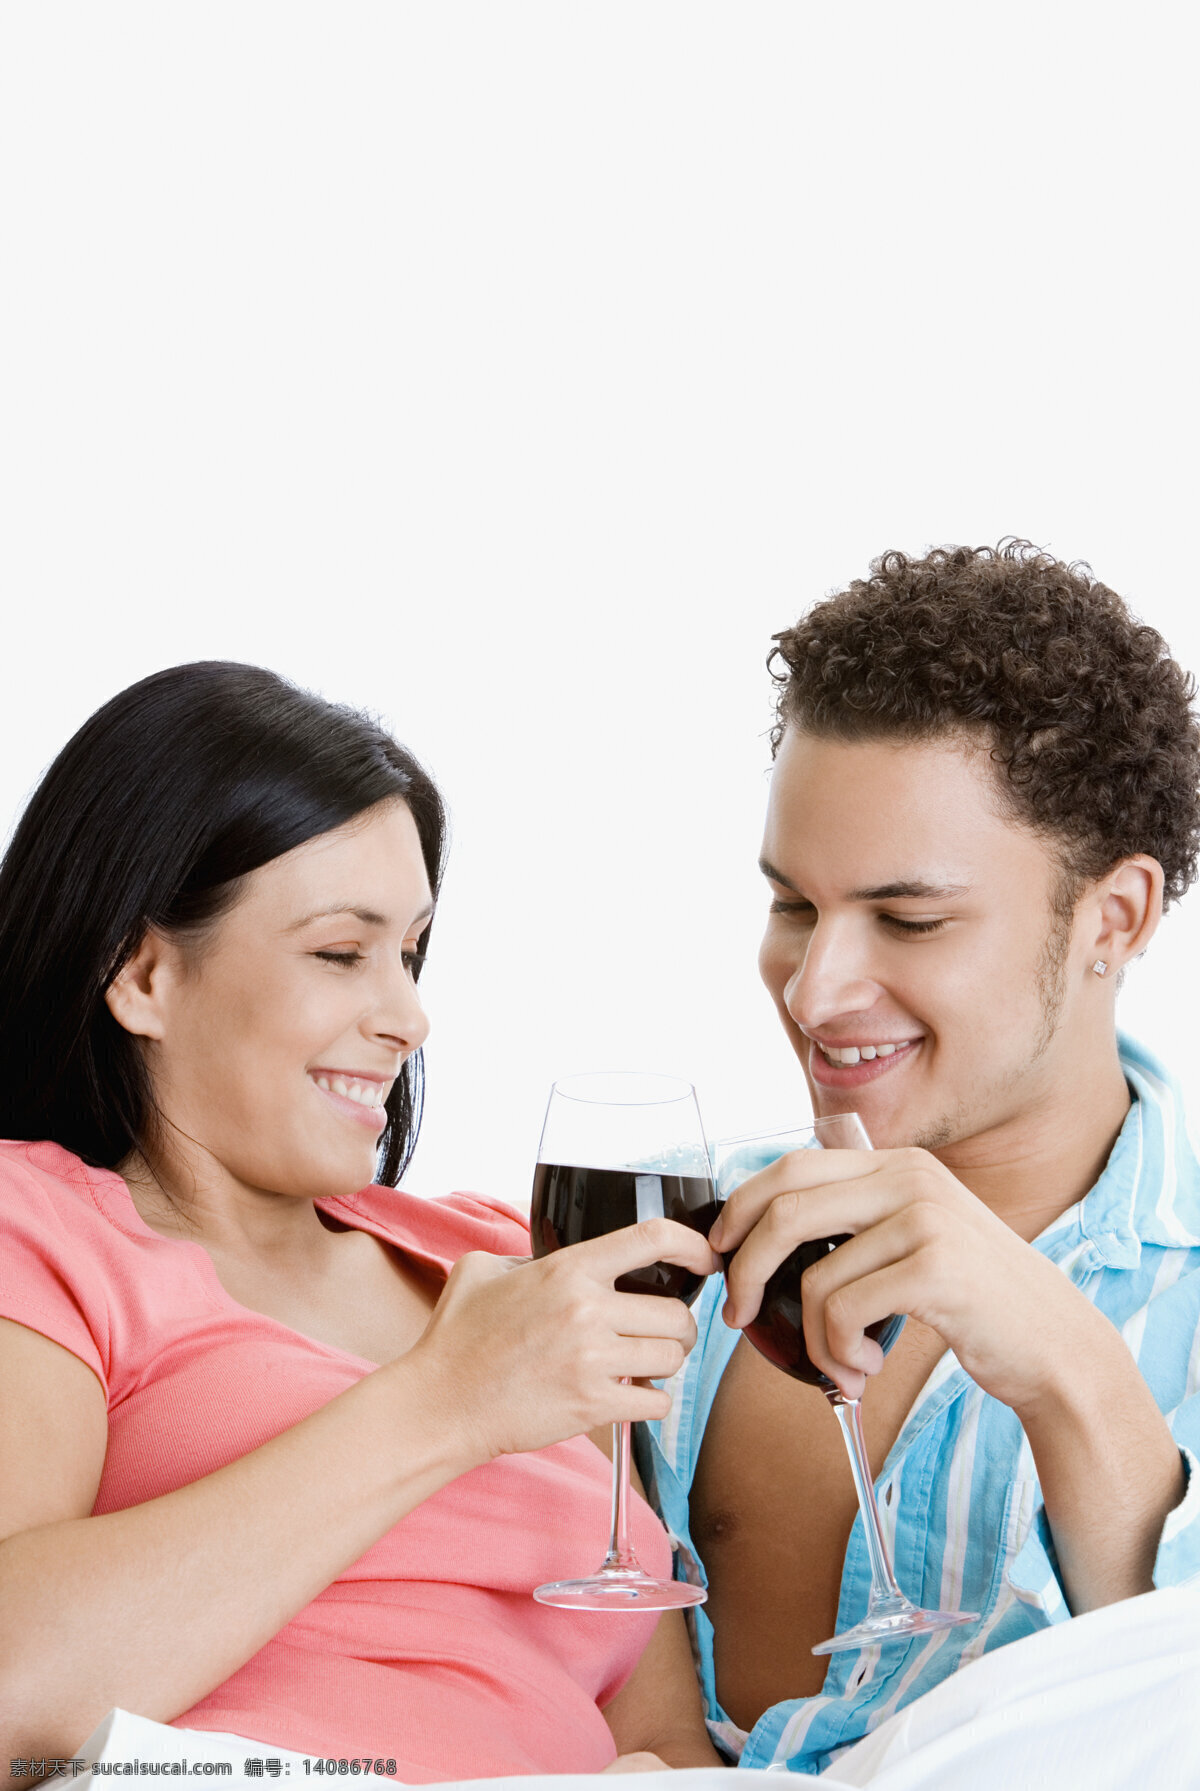 红酒 碰杯 亲密 男女 喝酒 庆祝 甜蜜 幸福 快乐 情侣 夫妻 国外男女 高清图片 情侣图片 人物图片